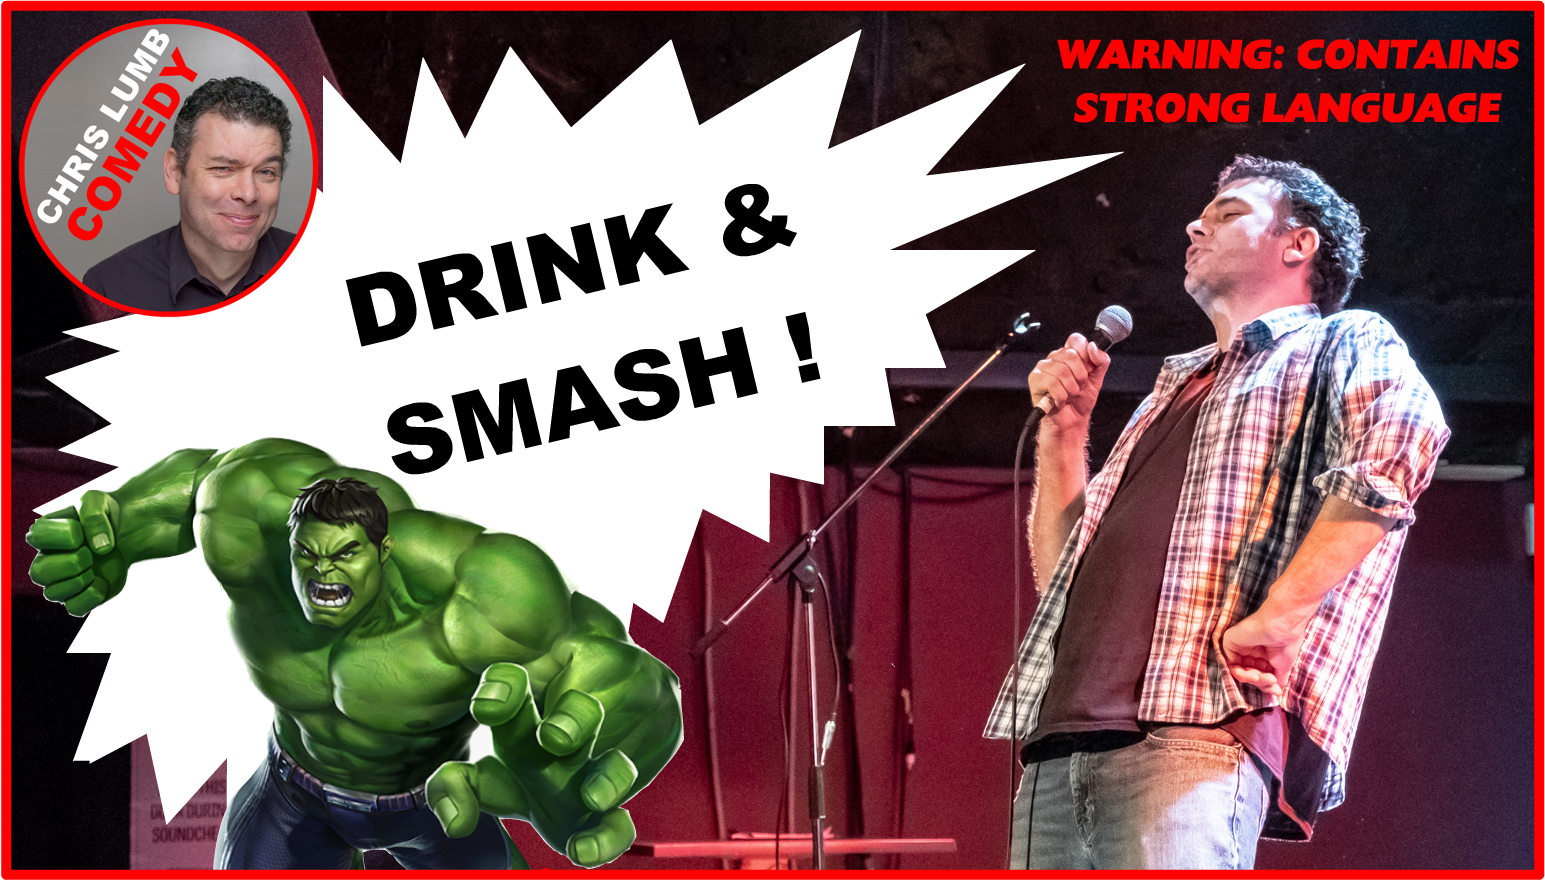 Chris Lumb Comedy "Drink and Smash"